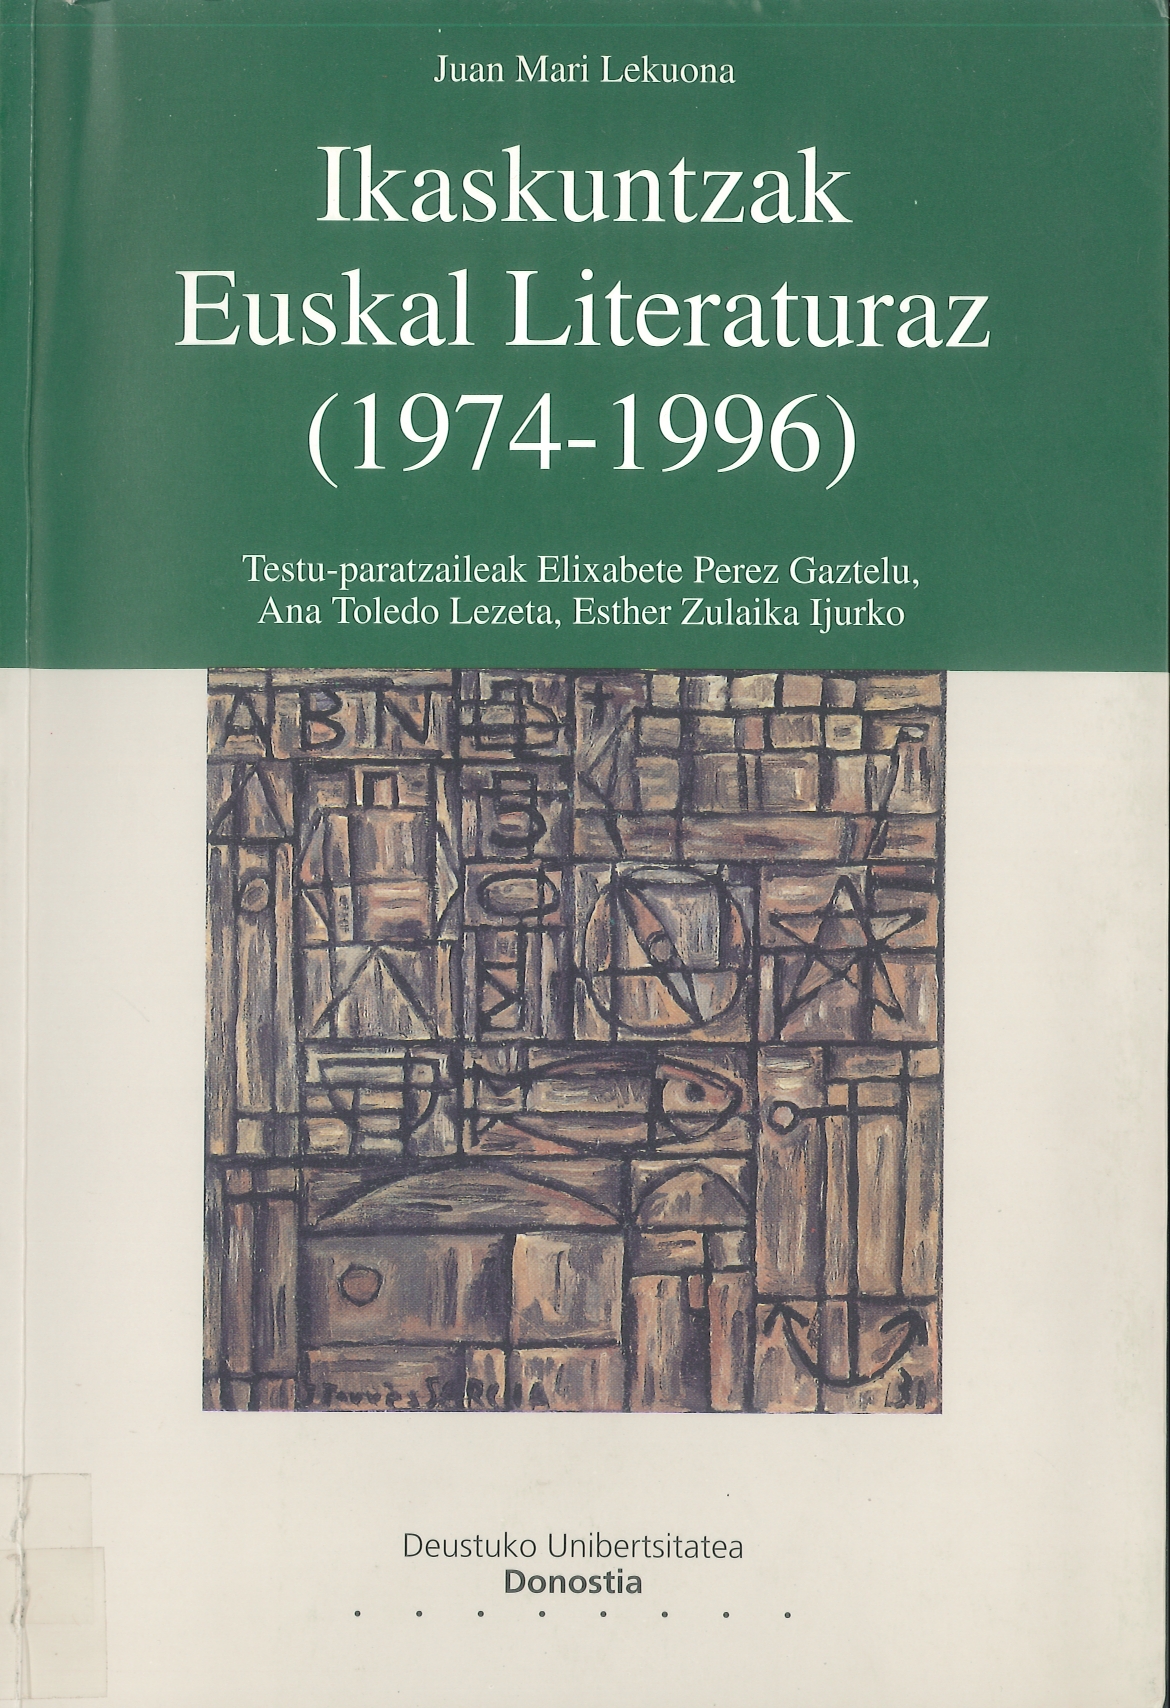 Imagen de portada del libro Ikaskuntzak euskal literaturaz (1974-1996)